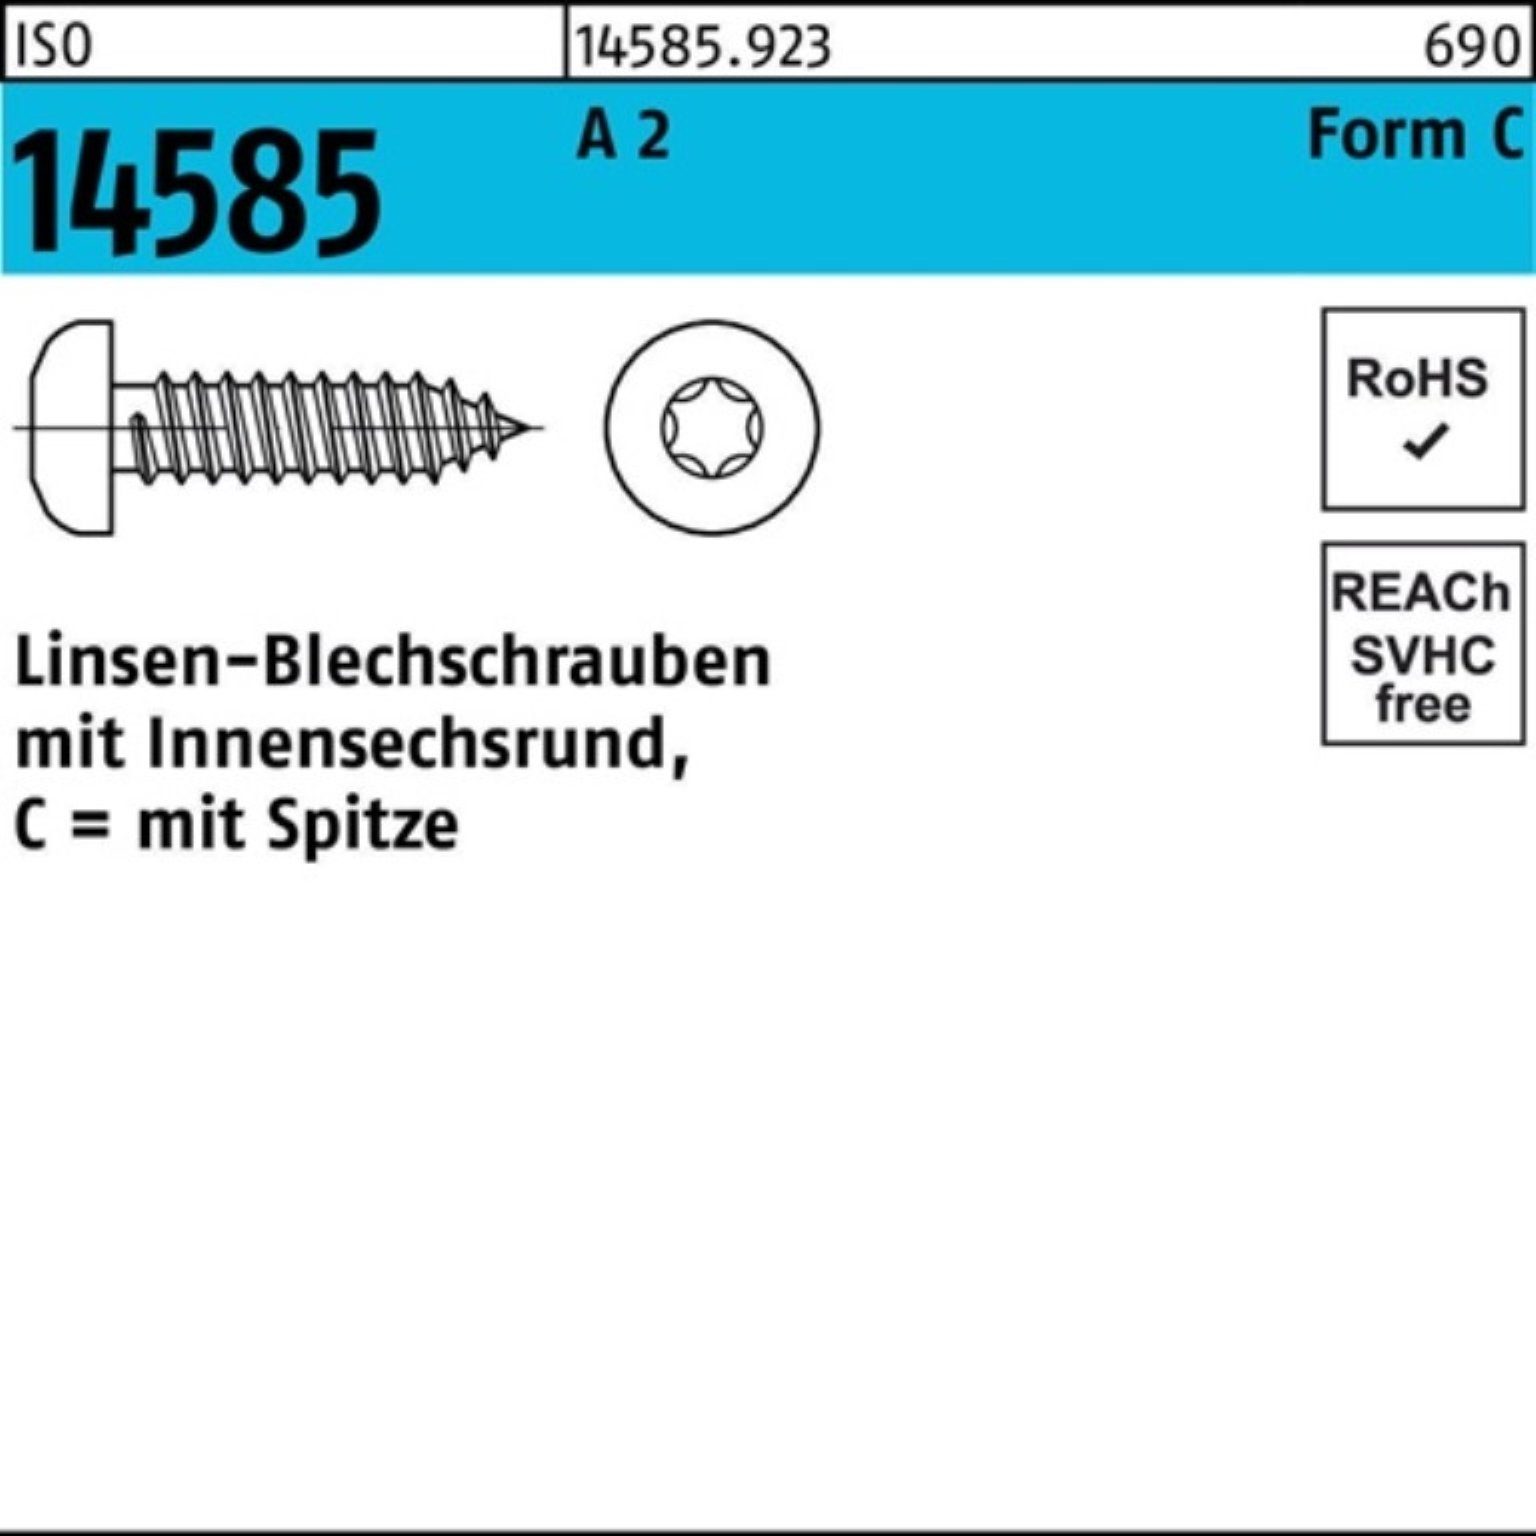 Pack 500 ISR 3,9x 14585 T15 St 2 -C Blechschraube ISO 38 500er Linsenblechschraube Reyher A